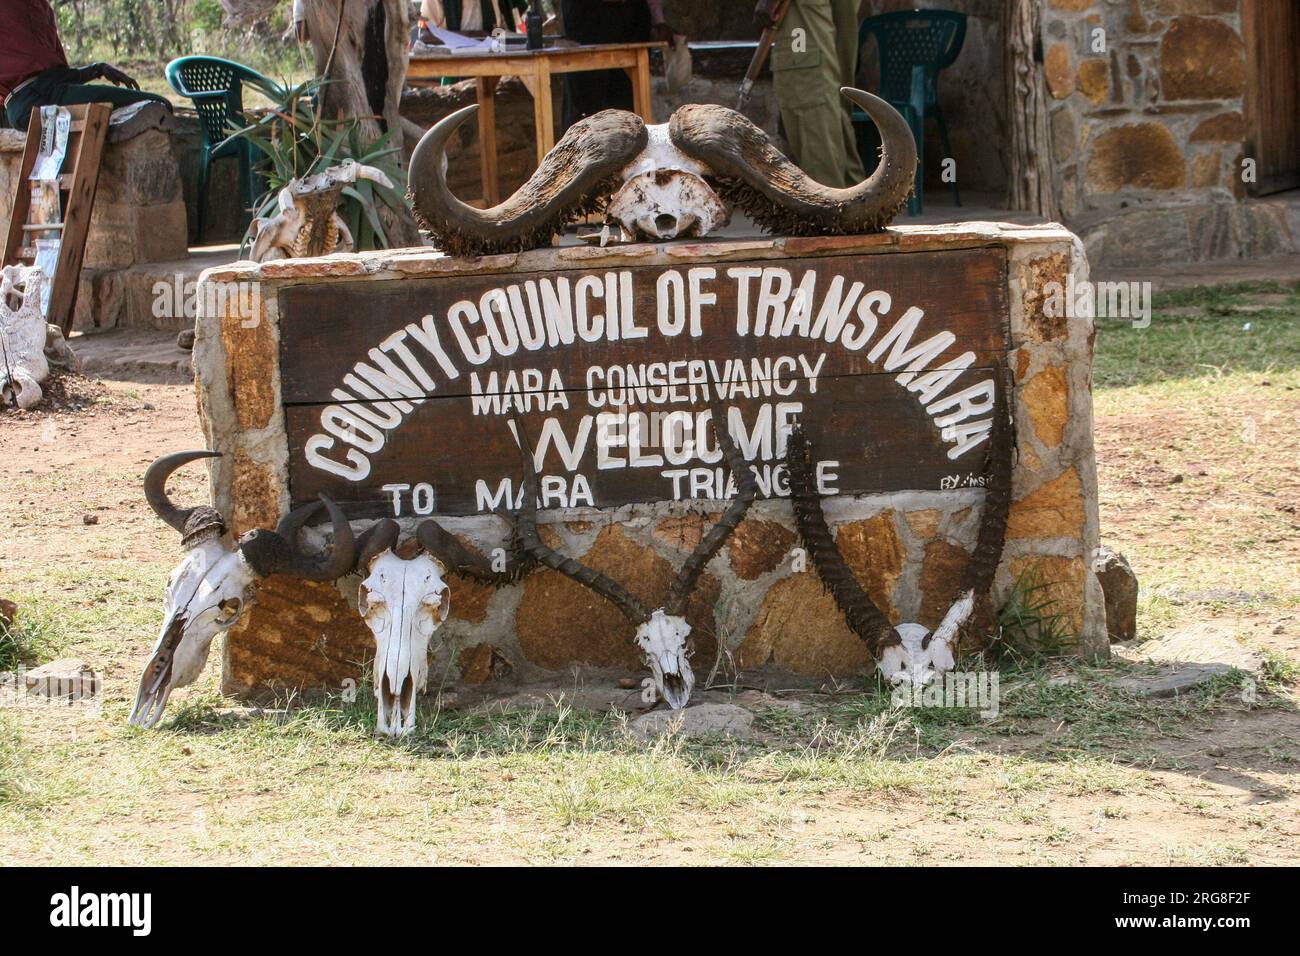 Panneau et crânes d'animaux au Masai Mara Conservancy, Kenya Safari Lodge. Banque D'Images